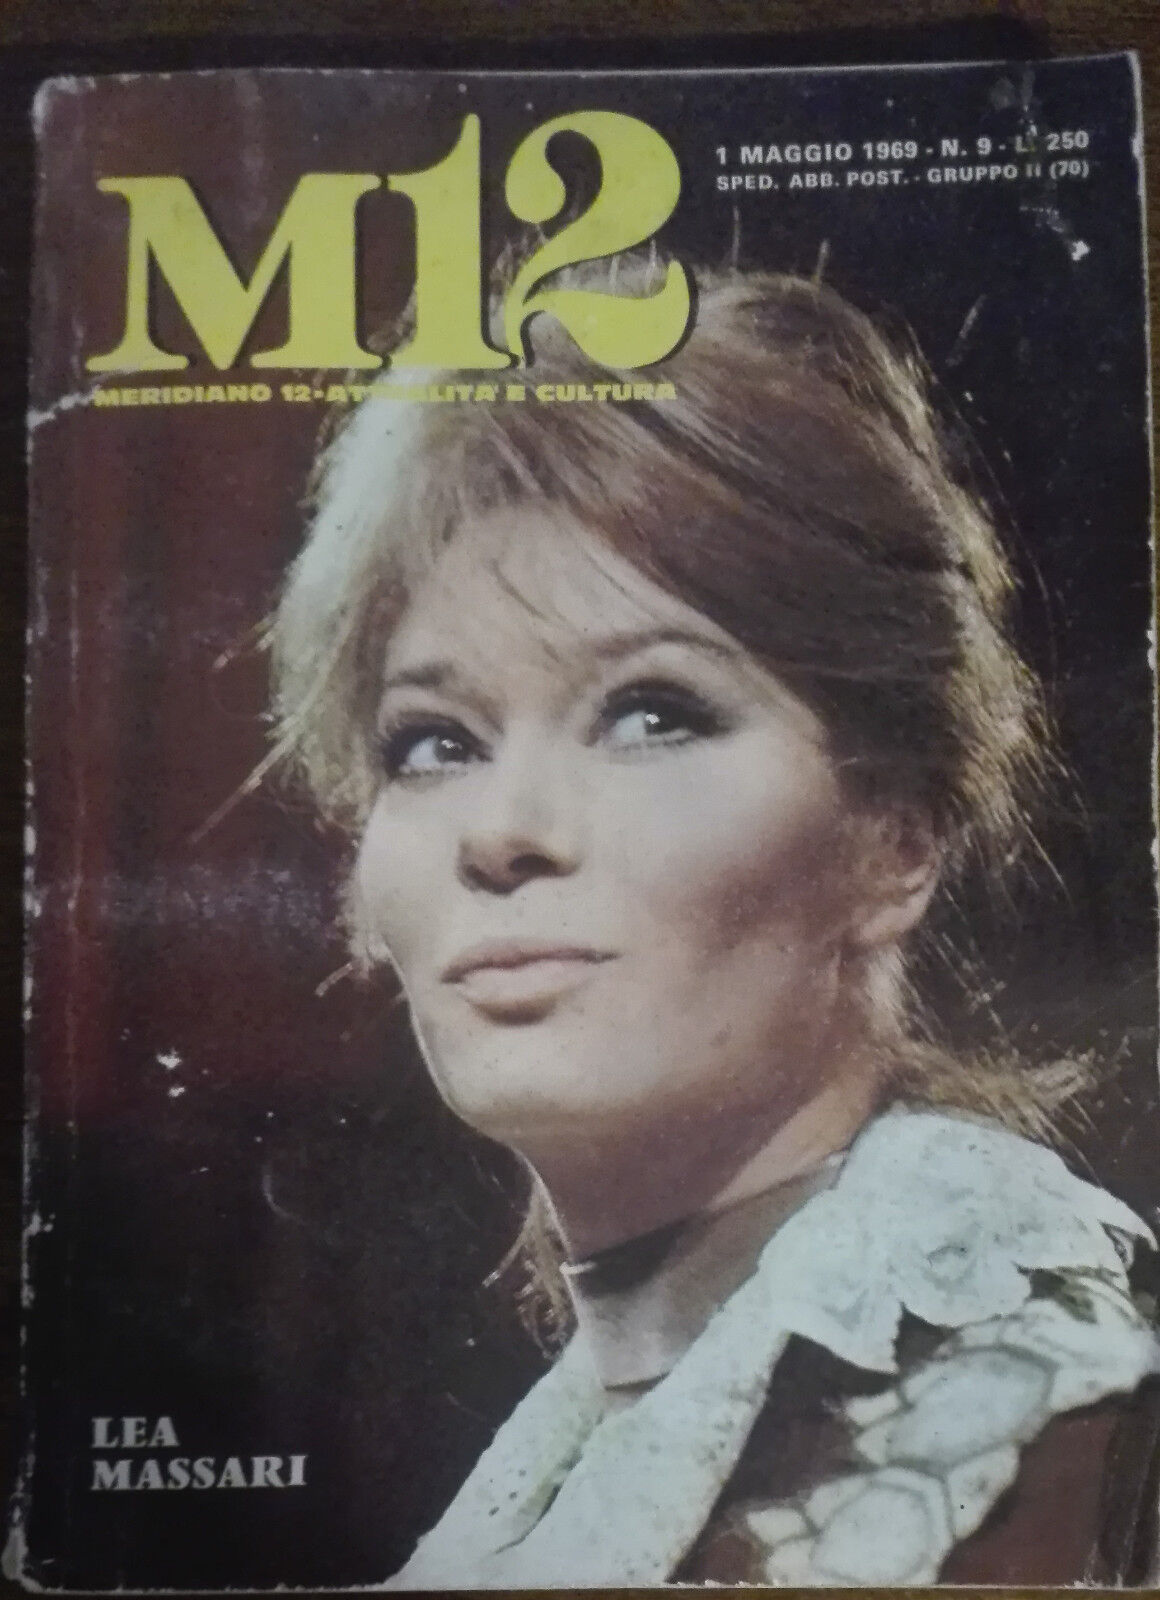 M 12 attivit? e cultura - Lea Massari - Edizioni periodici SEI,1968 - A